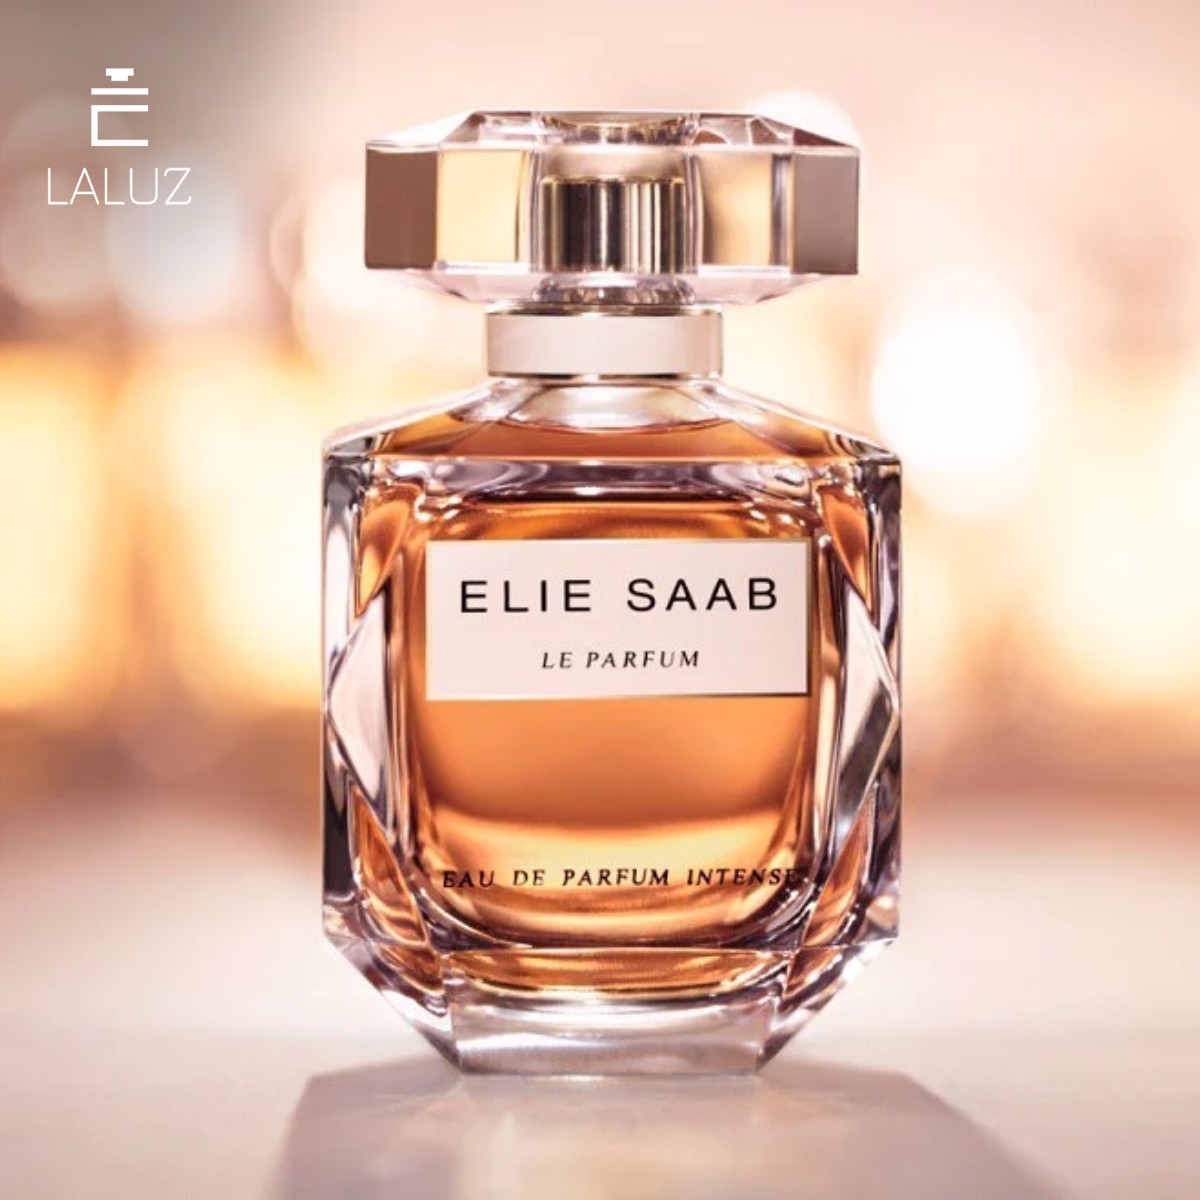 Nước hoa Elie Saab Le Parfum Intense với mùi hương gợi cảm, nữ tính